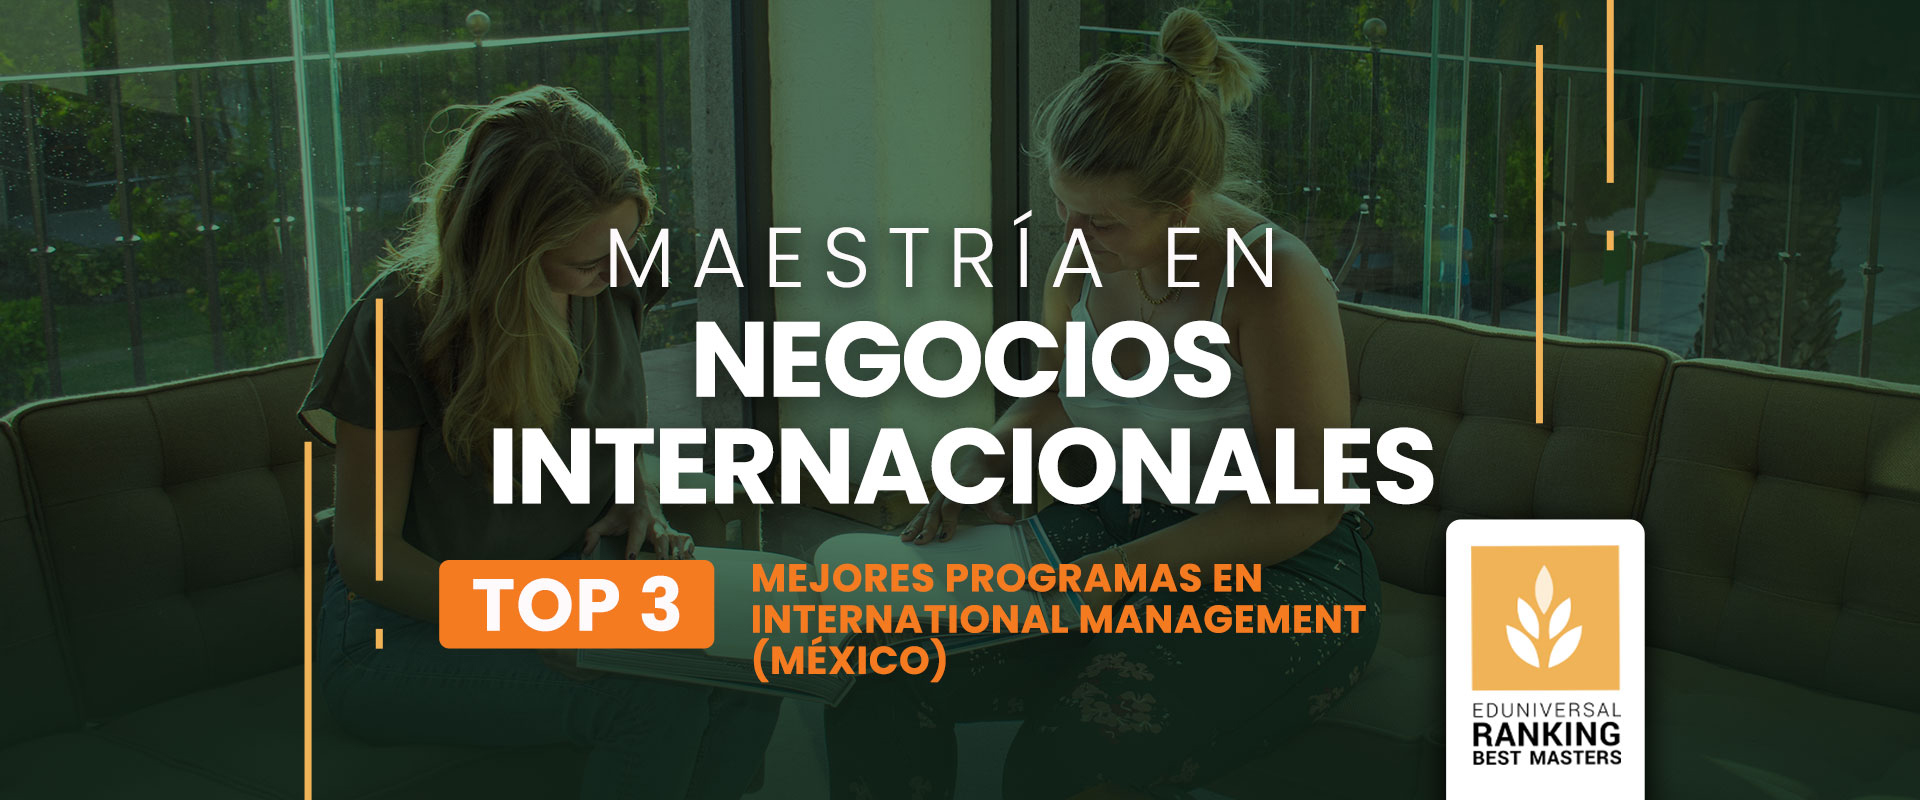 Maestría en Negocios Internacionales - Universidad de las Américas Puebla (UDLAP)